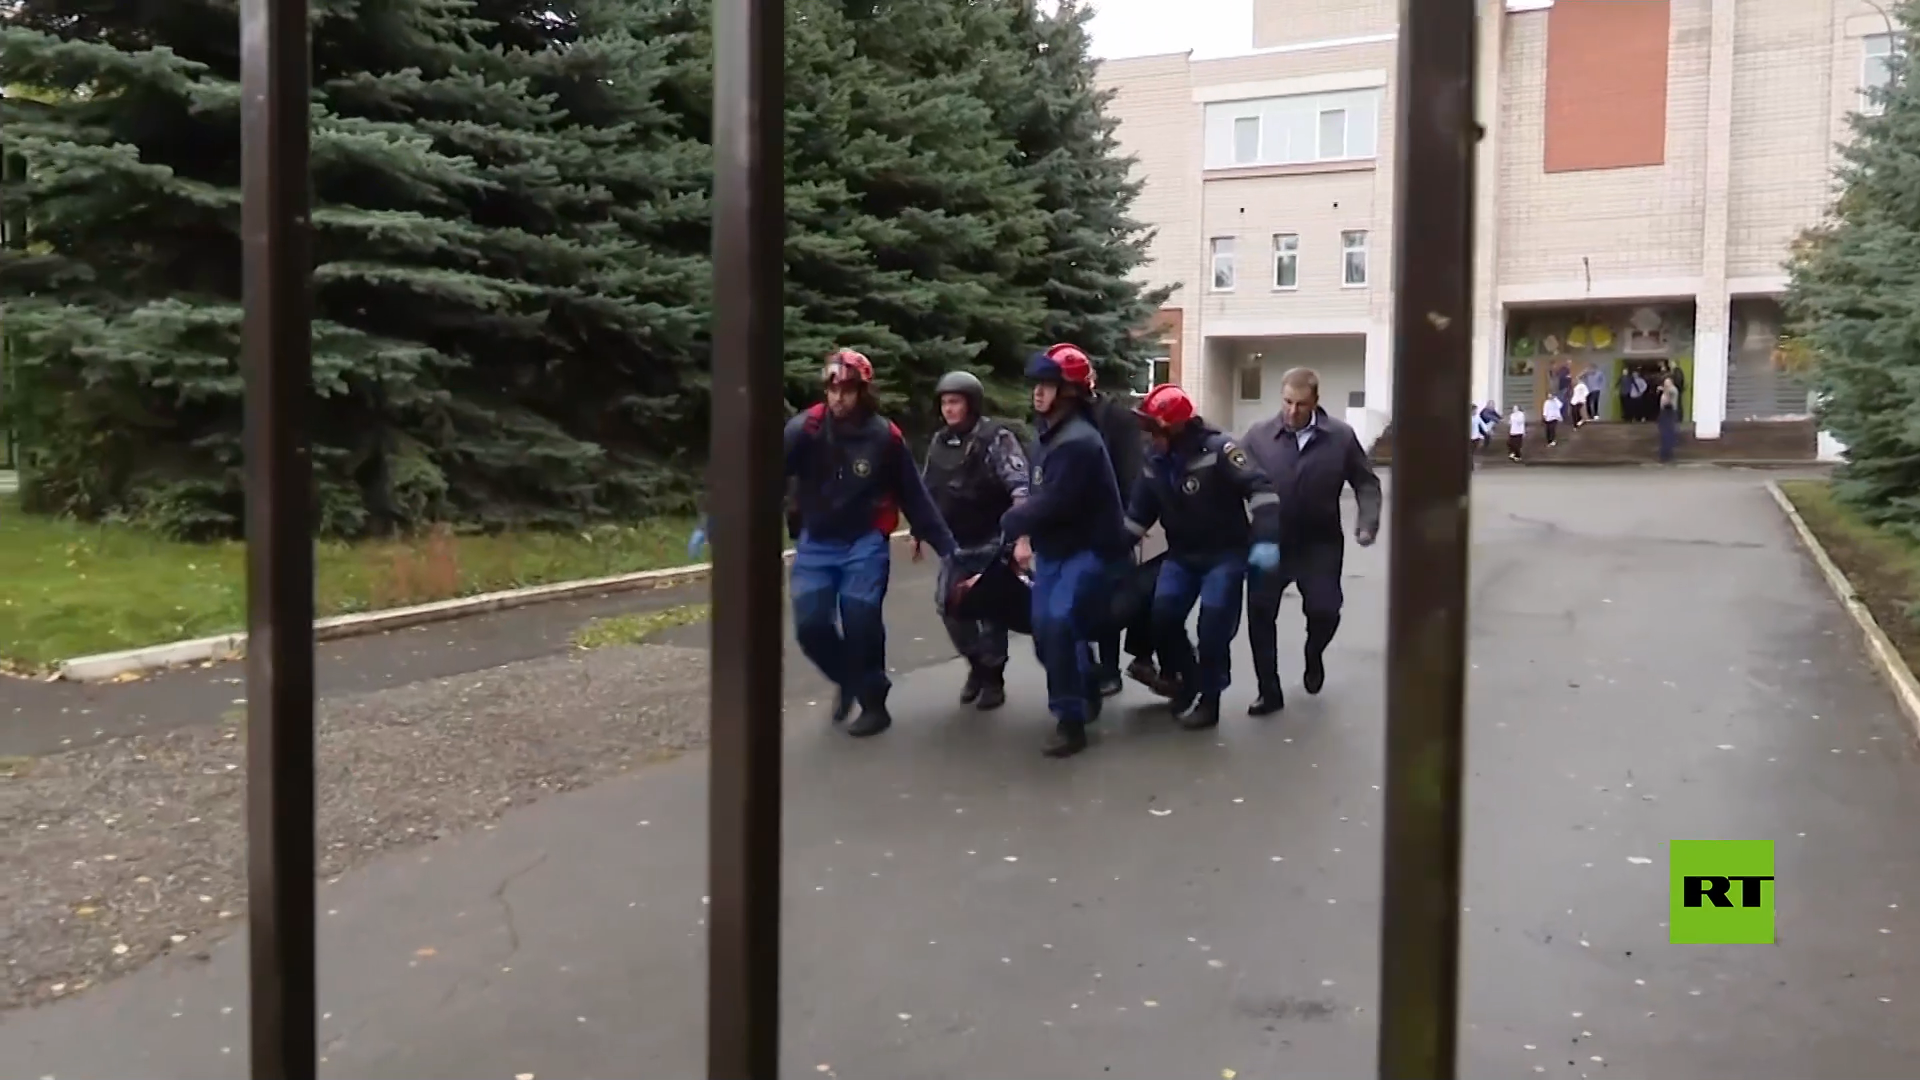 اللقطات الأولى لهجوم نفذه نازي على مدرسة روسية قتل فيه 17 شخصا بينهم 11 أطفال